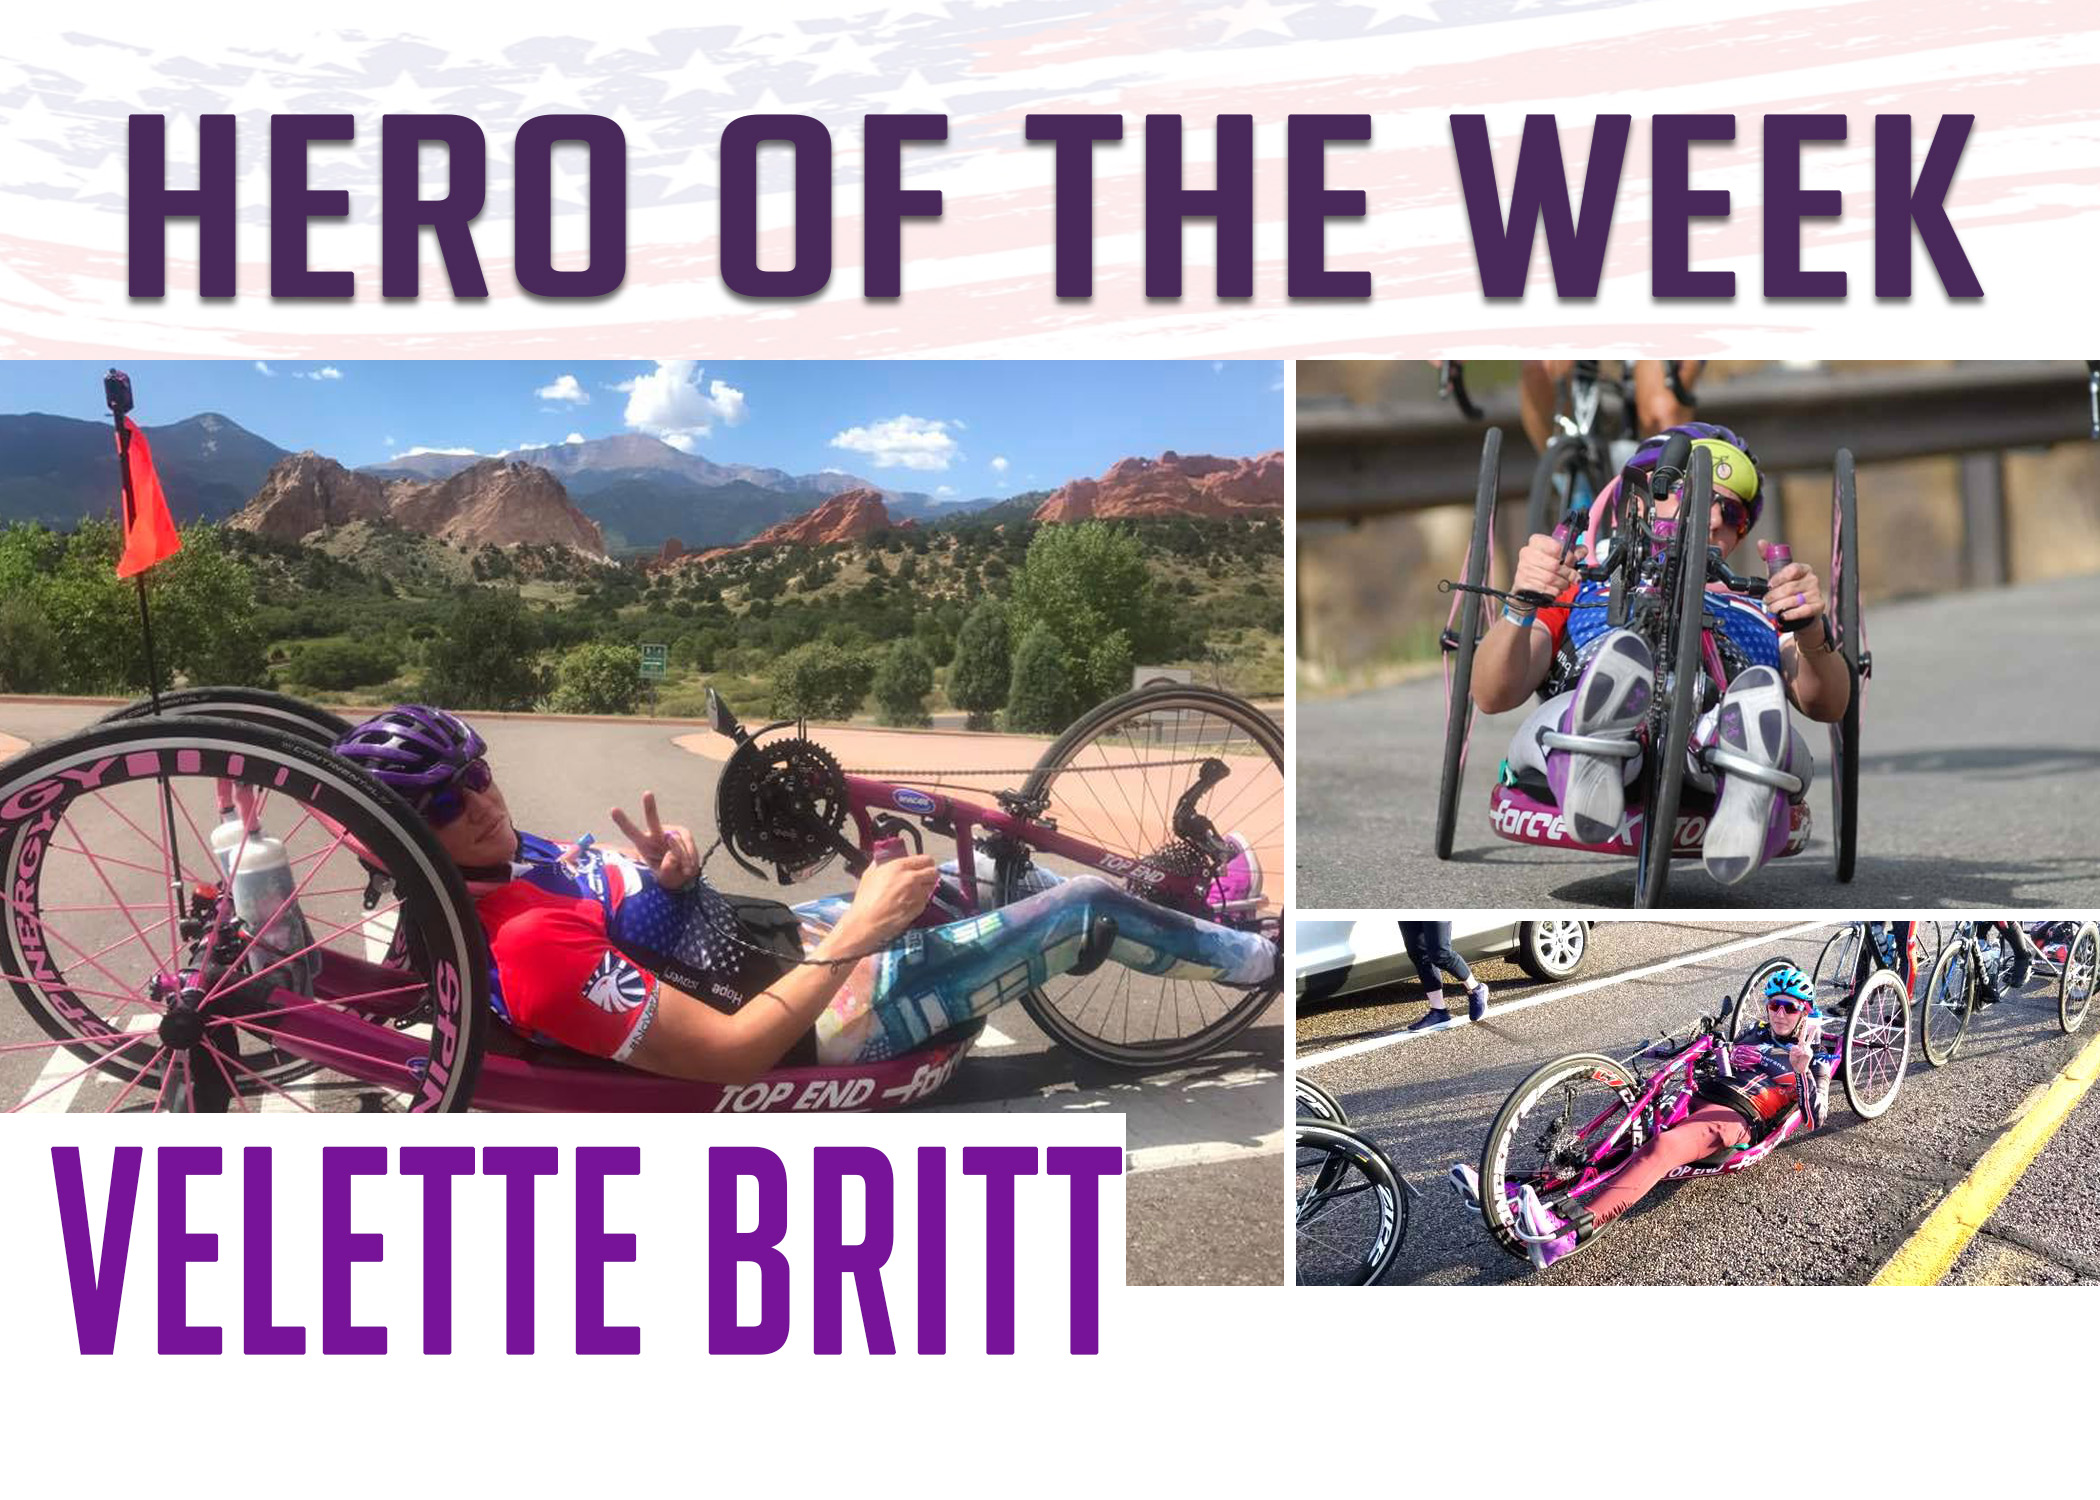 Hero of the Week: Velette Britt